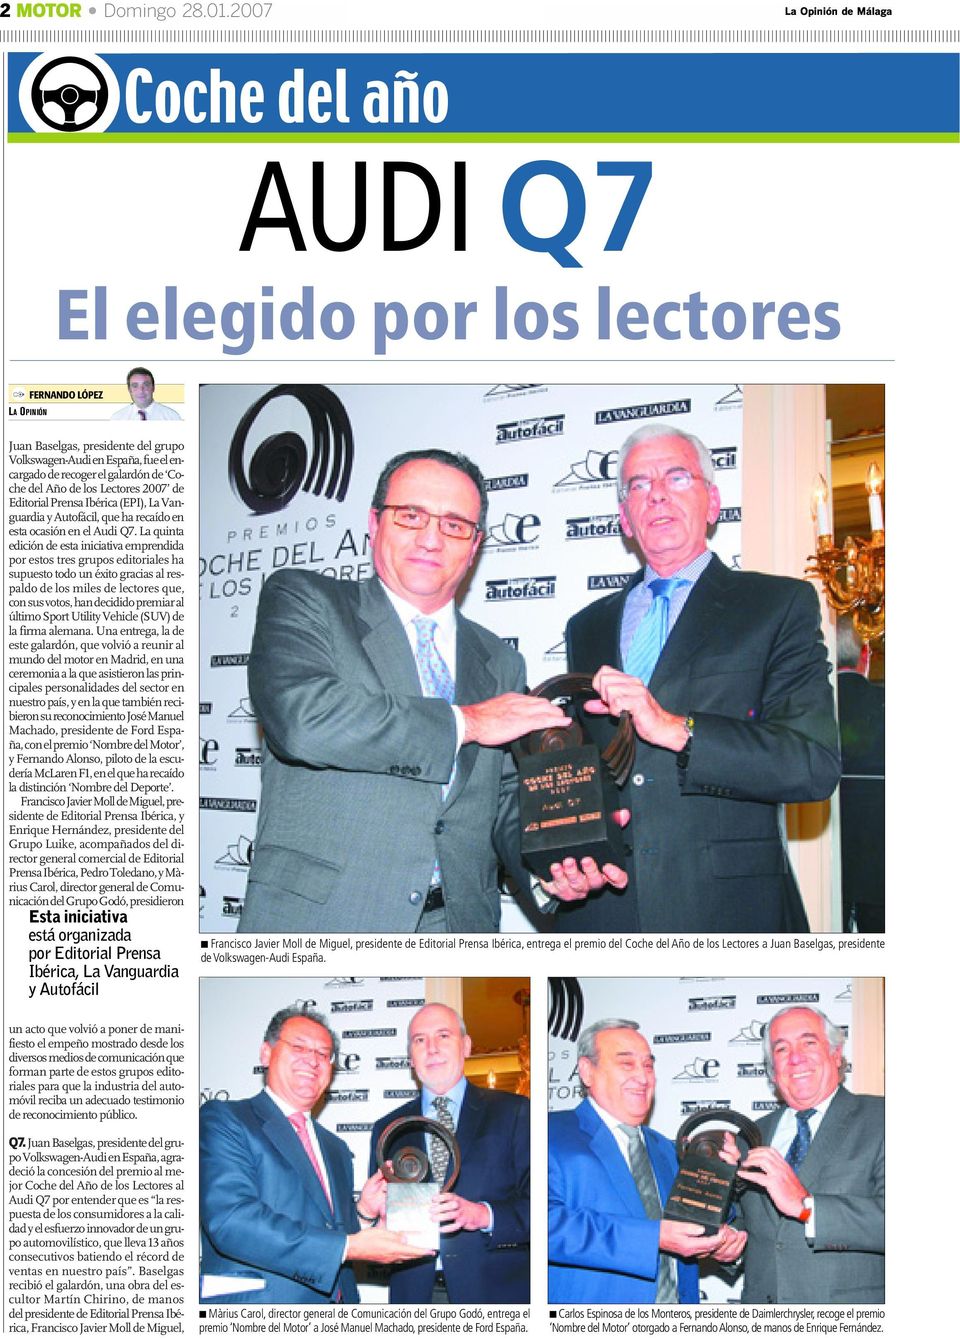 galardón de Coche del Año de los Lectores 2007 de Editorial Prensa Ibérica (EPI), La Vanguardia y Autofácil, que ha recaído en esta ocasión en el Audi Q7.